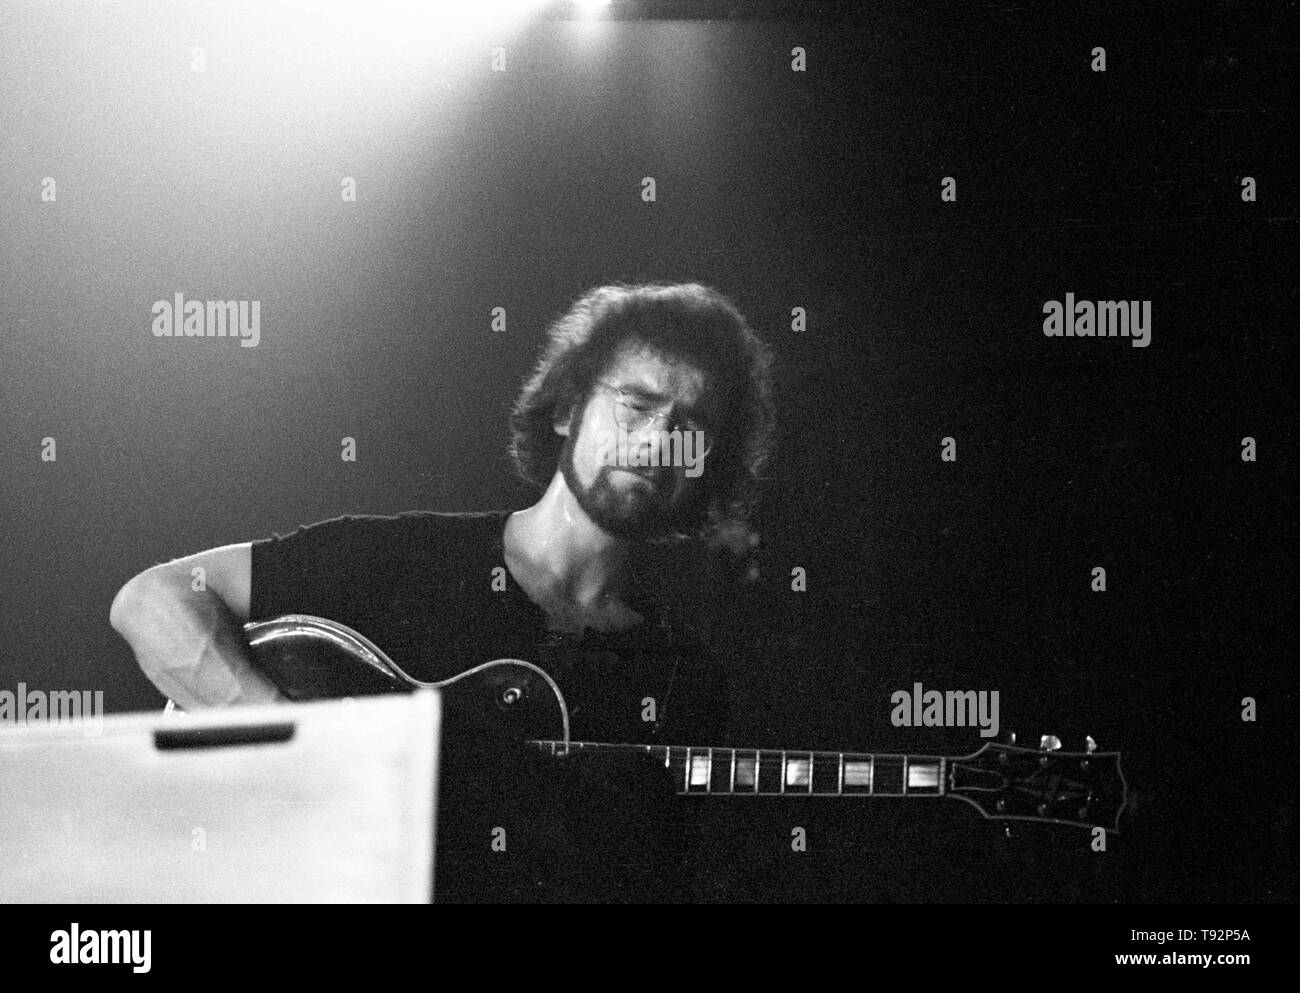 Amsterdam, Pays-Bas : Robert Fripp de King Crimson effectue sur scène au Concertgebouw d'Amsterdam, Pays-Bas le 31 mars 1973. Banque D'Images